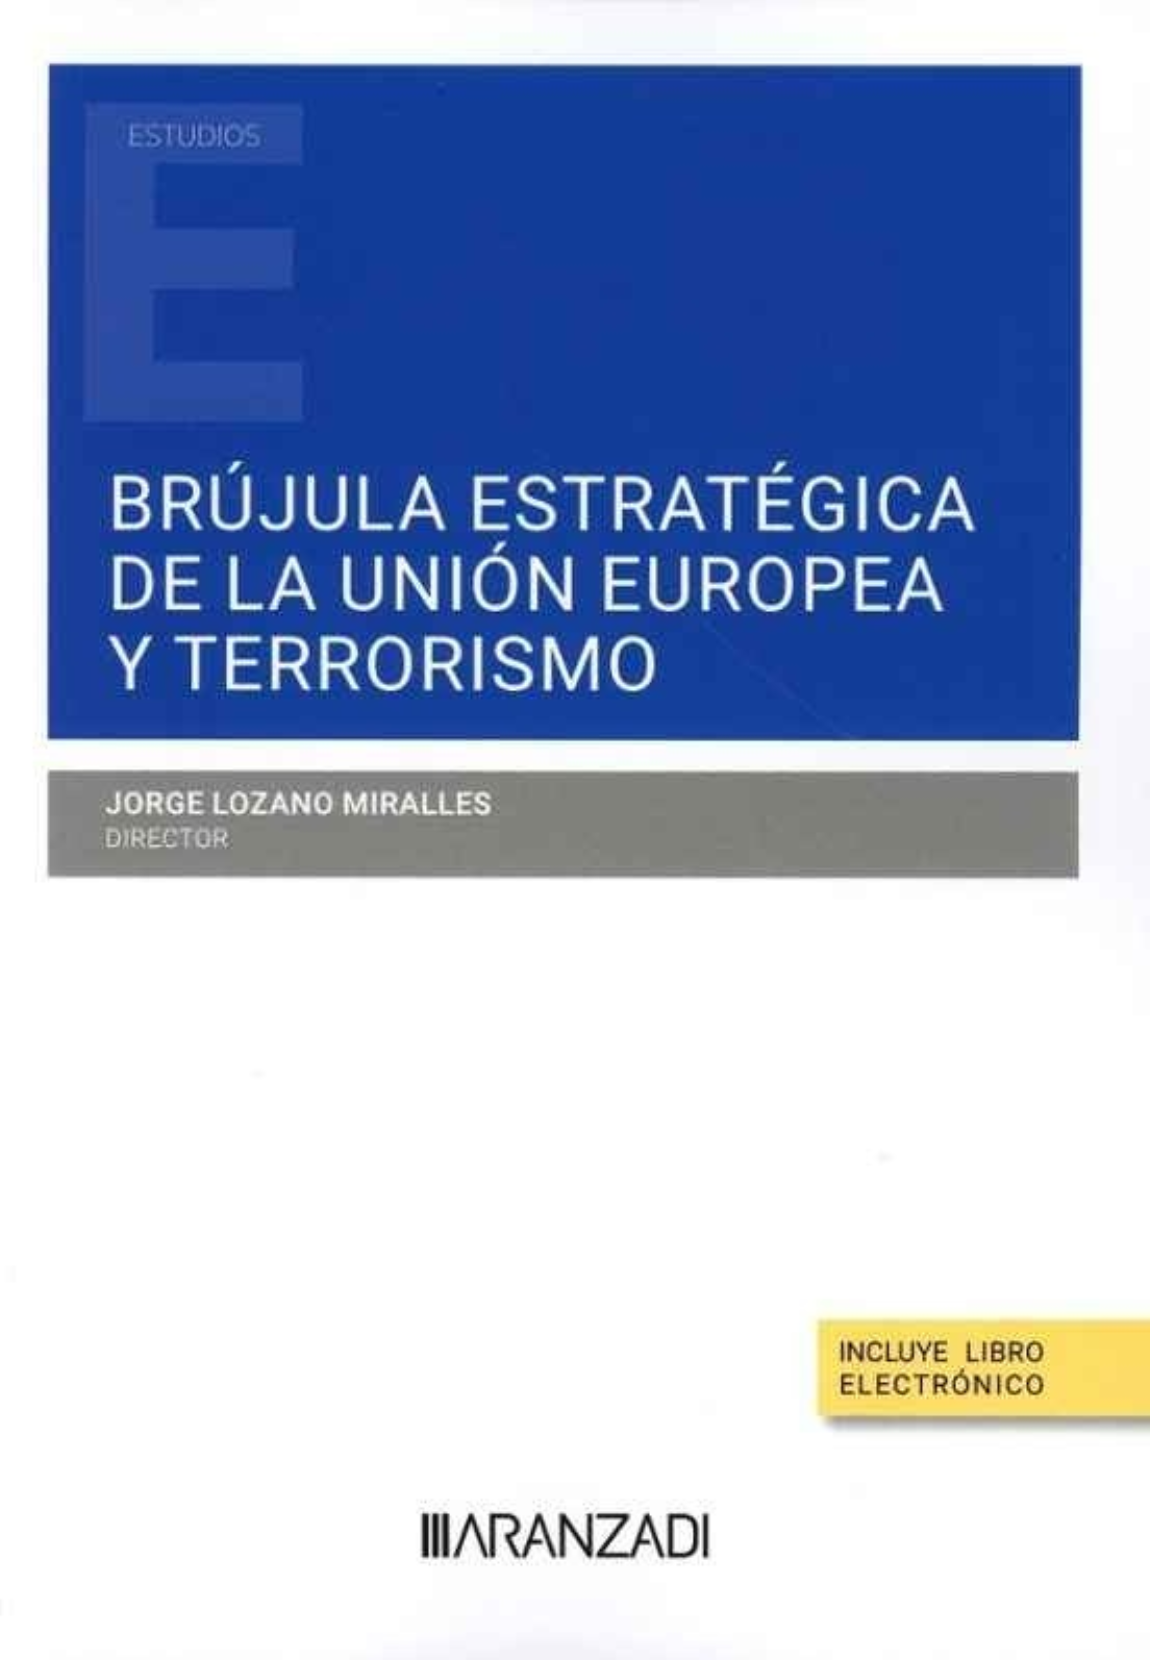 Imagen de portada del libro Brújula estratégica de la Unión Europea y terrorismo